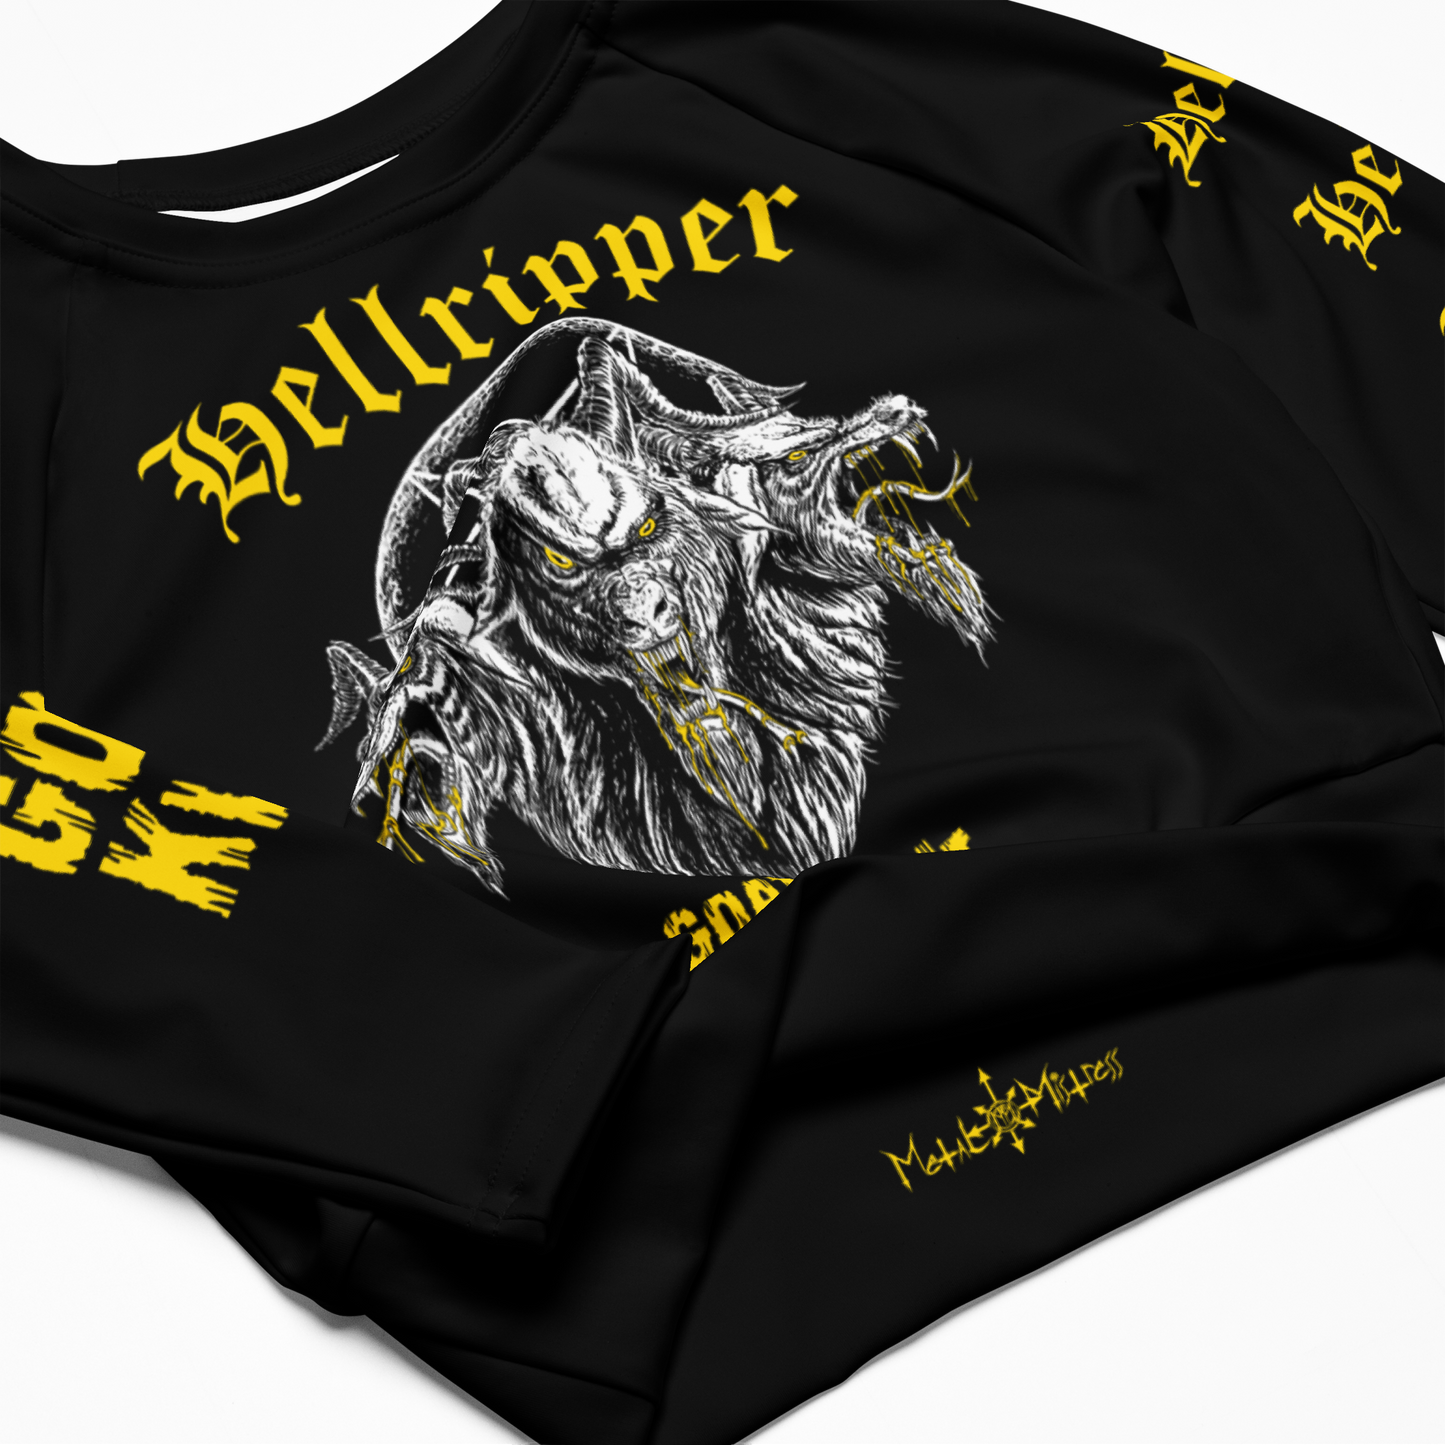 Hellripper - Goat Kvlt Official Long Sleeve Crop Top by Metal Mistress